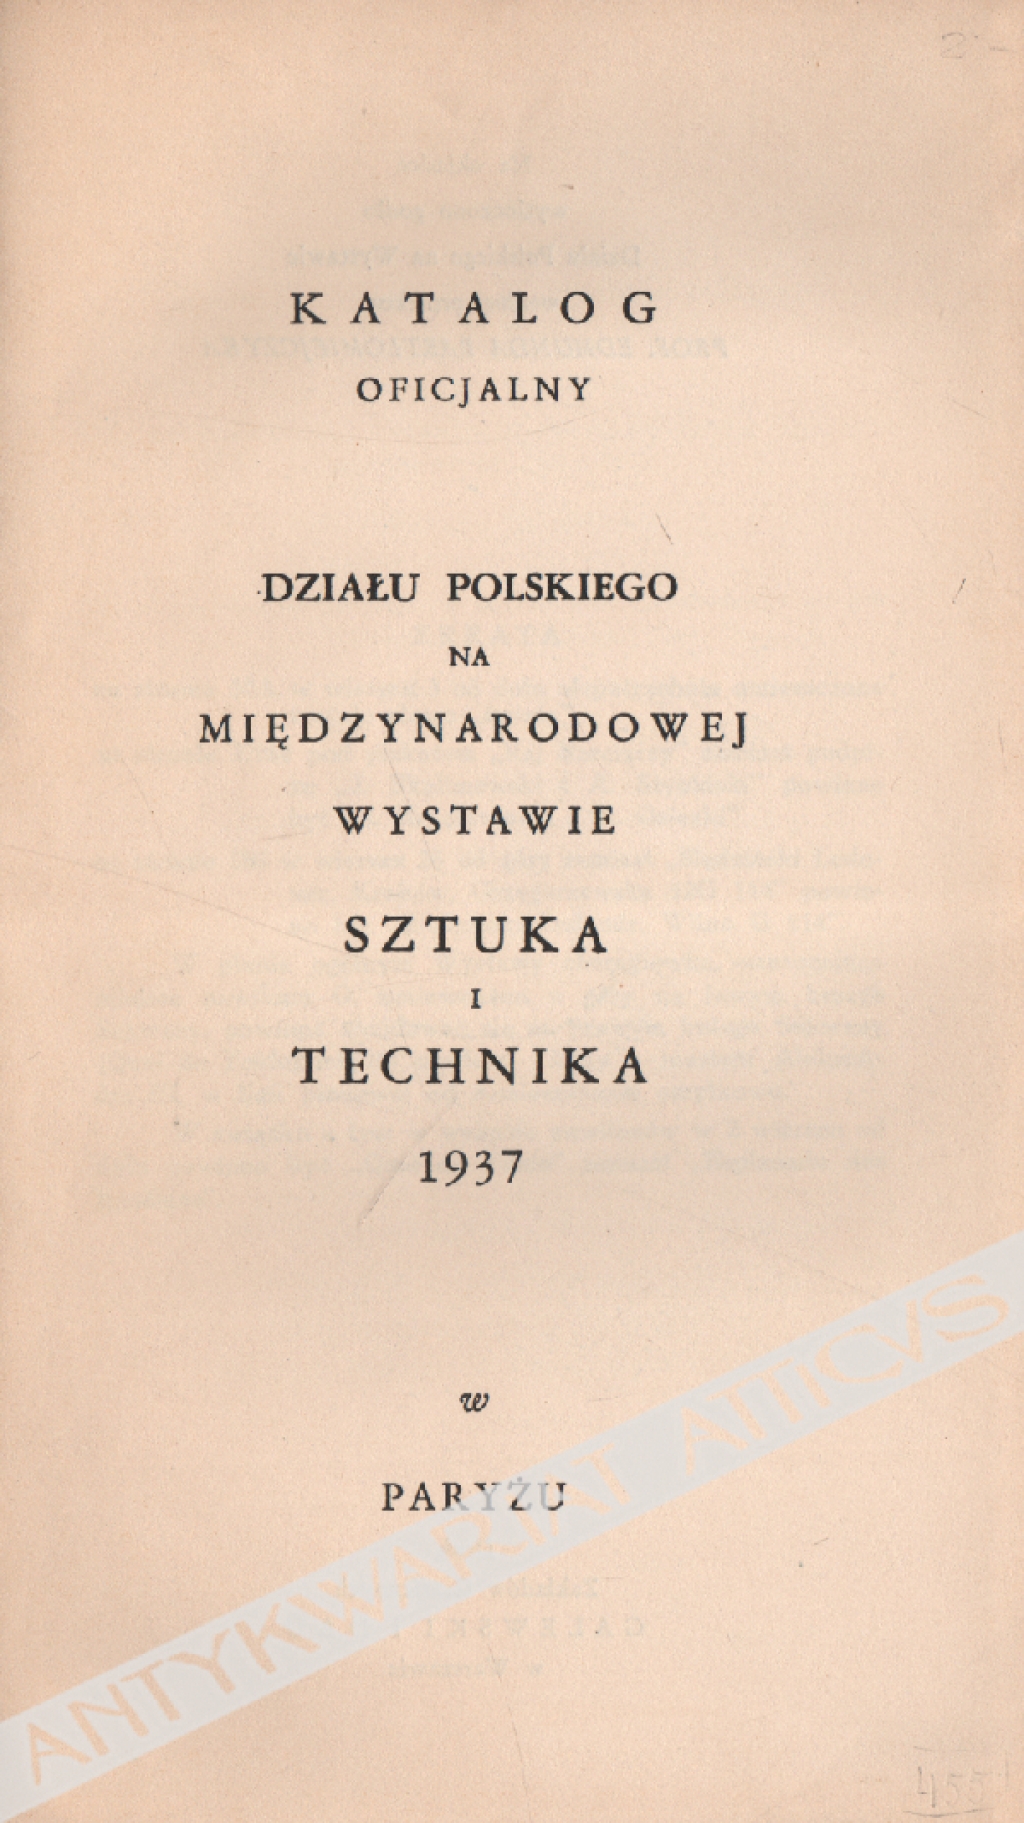 Katalog oficjalny działu polskiego na Międzynarodowej Wystawie Sztuka i Technika 1937 w Paryżu